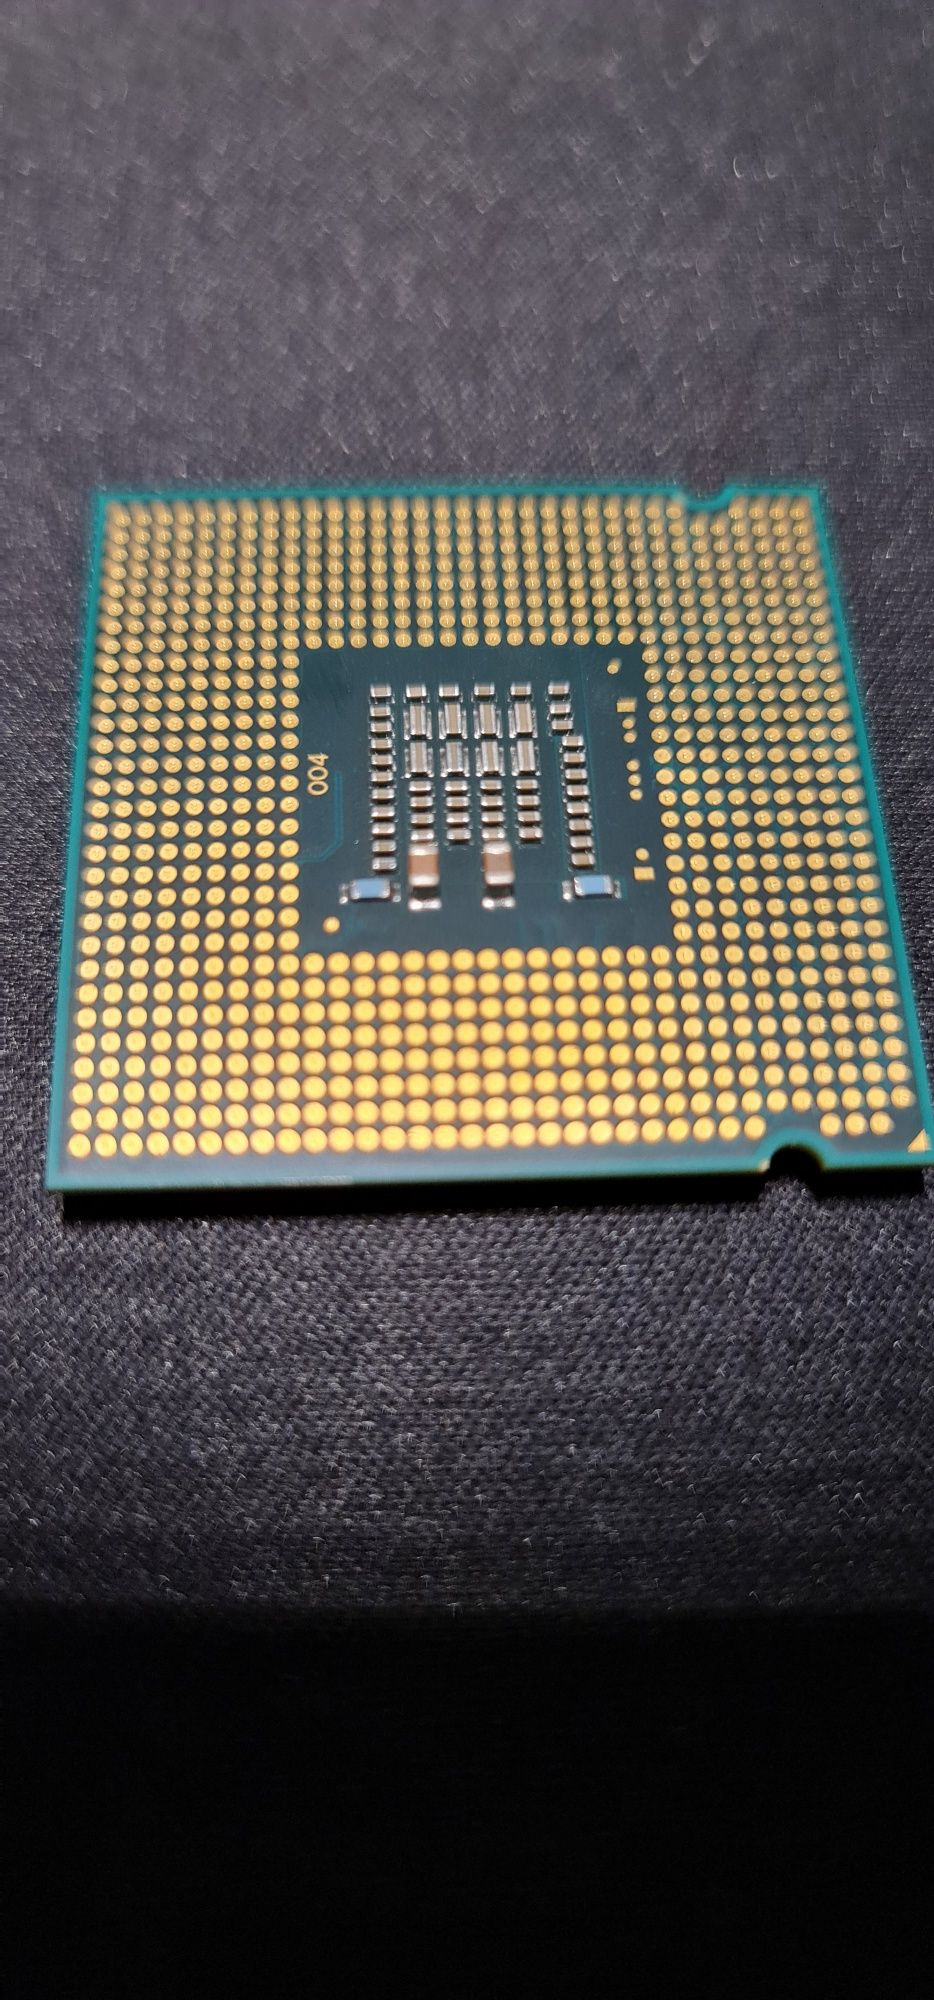 CPU Intel Core 2 Duo 2.93Ghz - E7500 (socket LGA 775)